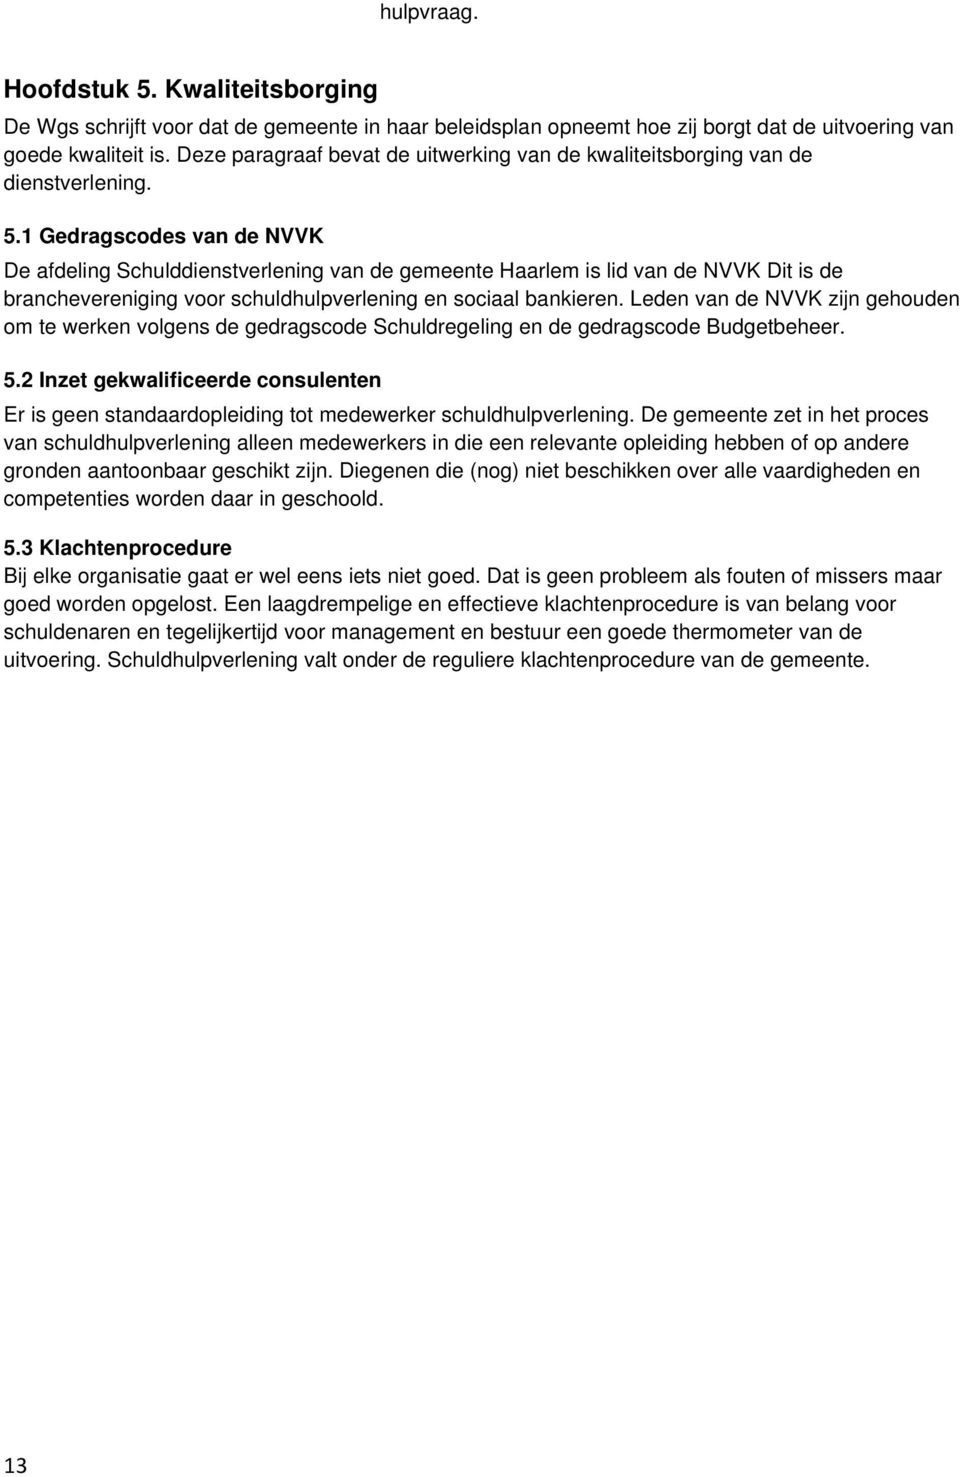 1 Gedragscodes van de NVVK De afdeling Schulddienstverlening van de gemeente Haarlem is lid van de NVVK Dit is de branchevereniging voor schuldhulpverlening en sociaal bankieren.